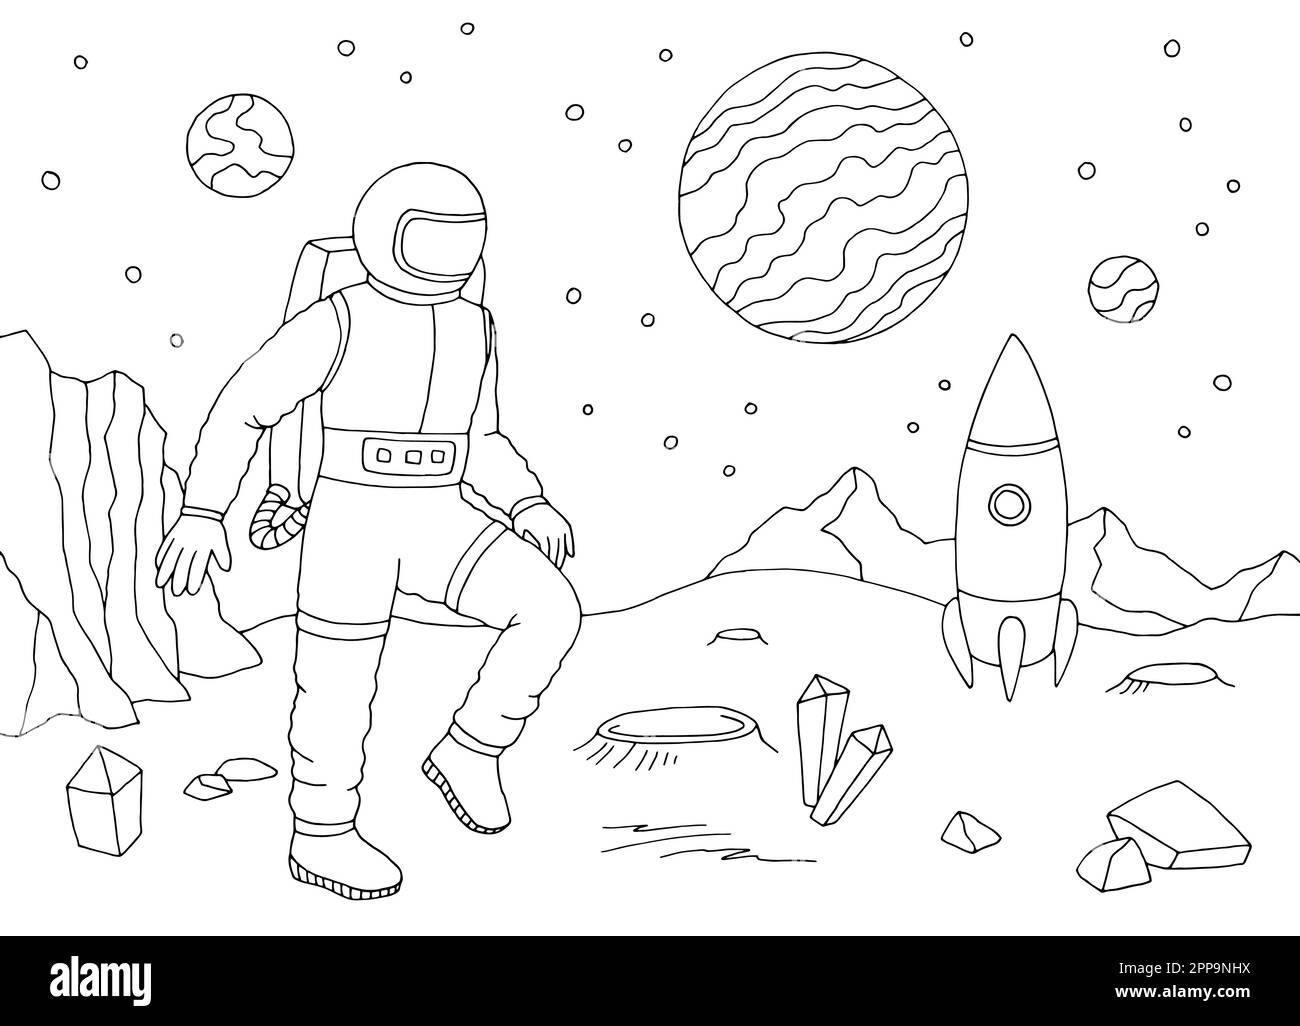 Der Astronaut des Raumschiffs läuft auf einem fremden Planeten. Grafik Schwarzweiß-Querformat Skizze Illustration, Vektor Stock Vektor